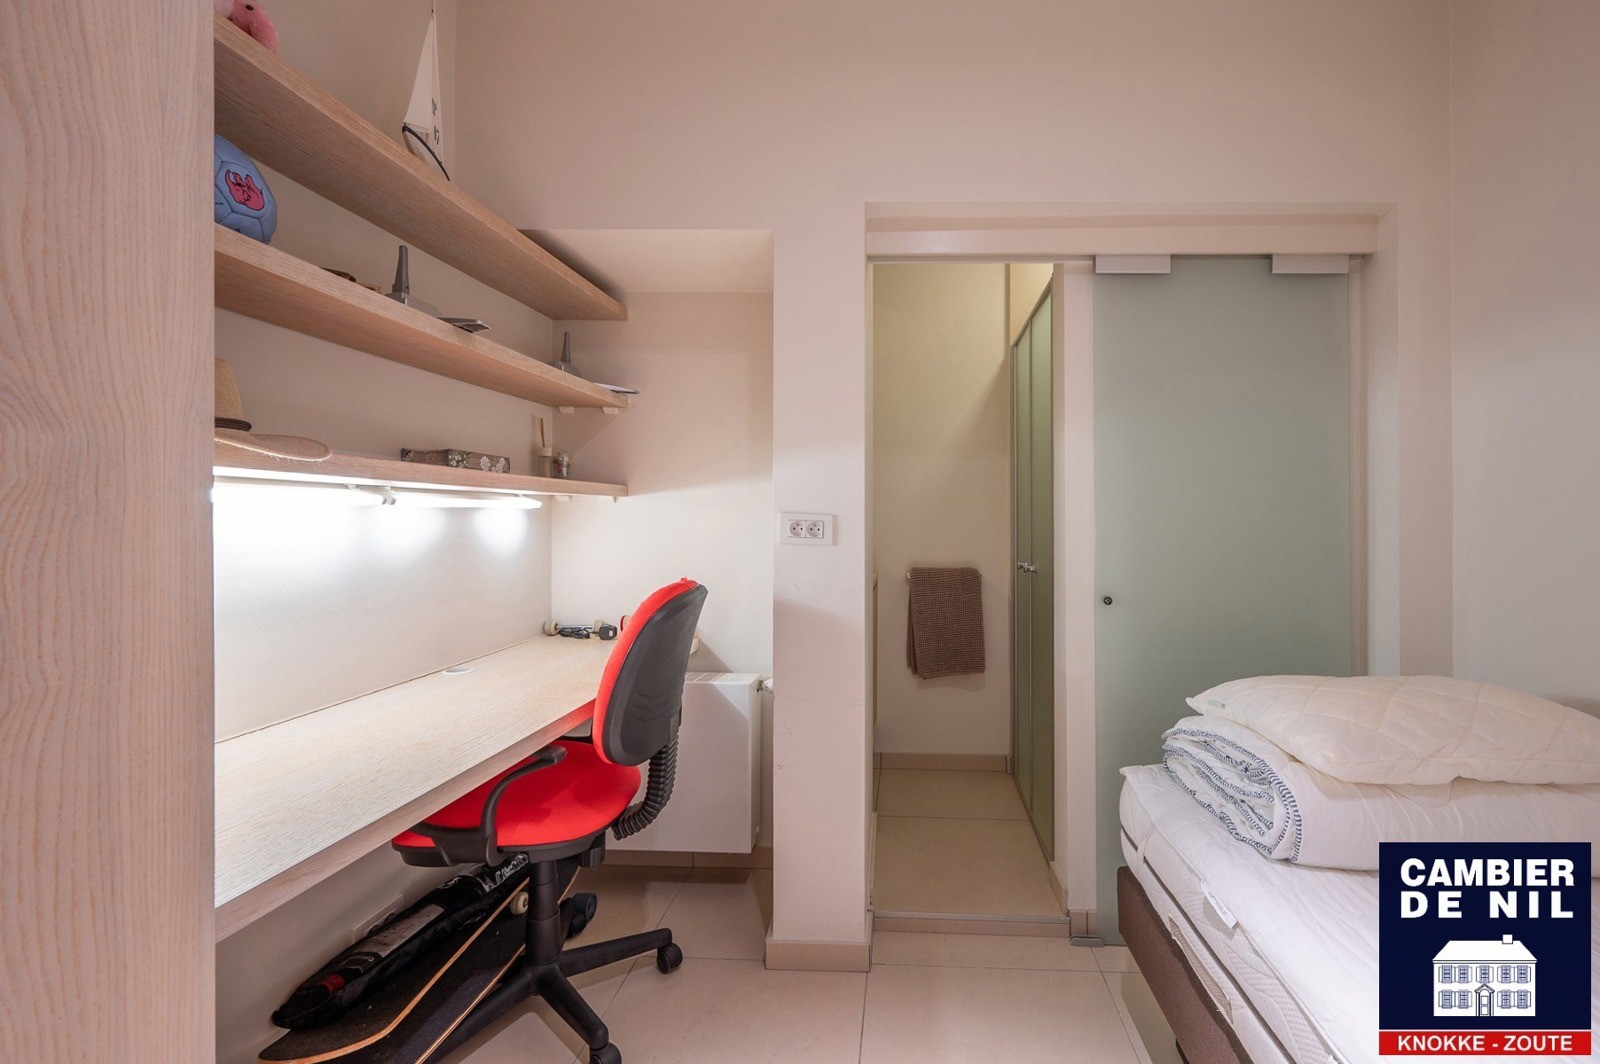 MEUBLÉ : Appartement spacieux avec vue mer et 4 chambres à coucher à Duinbergen ! 15